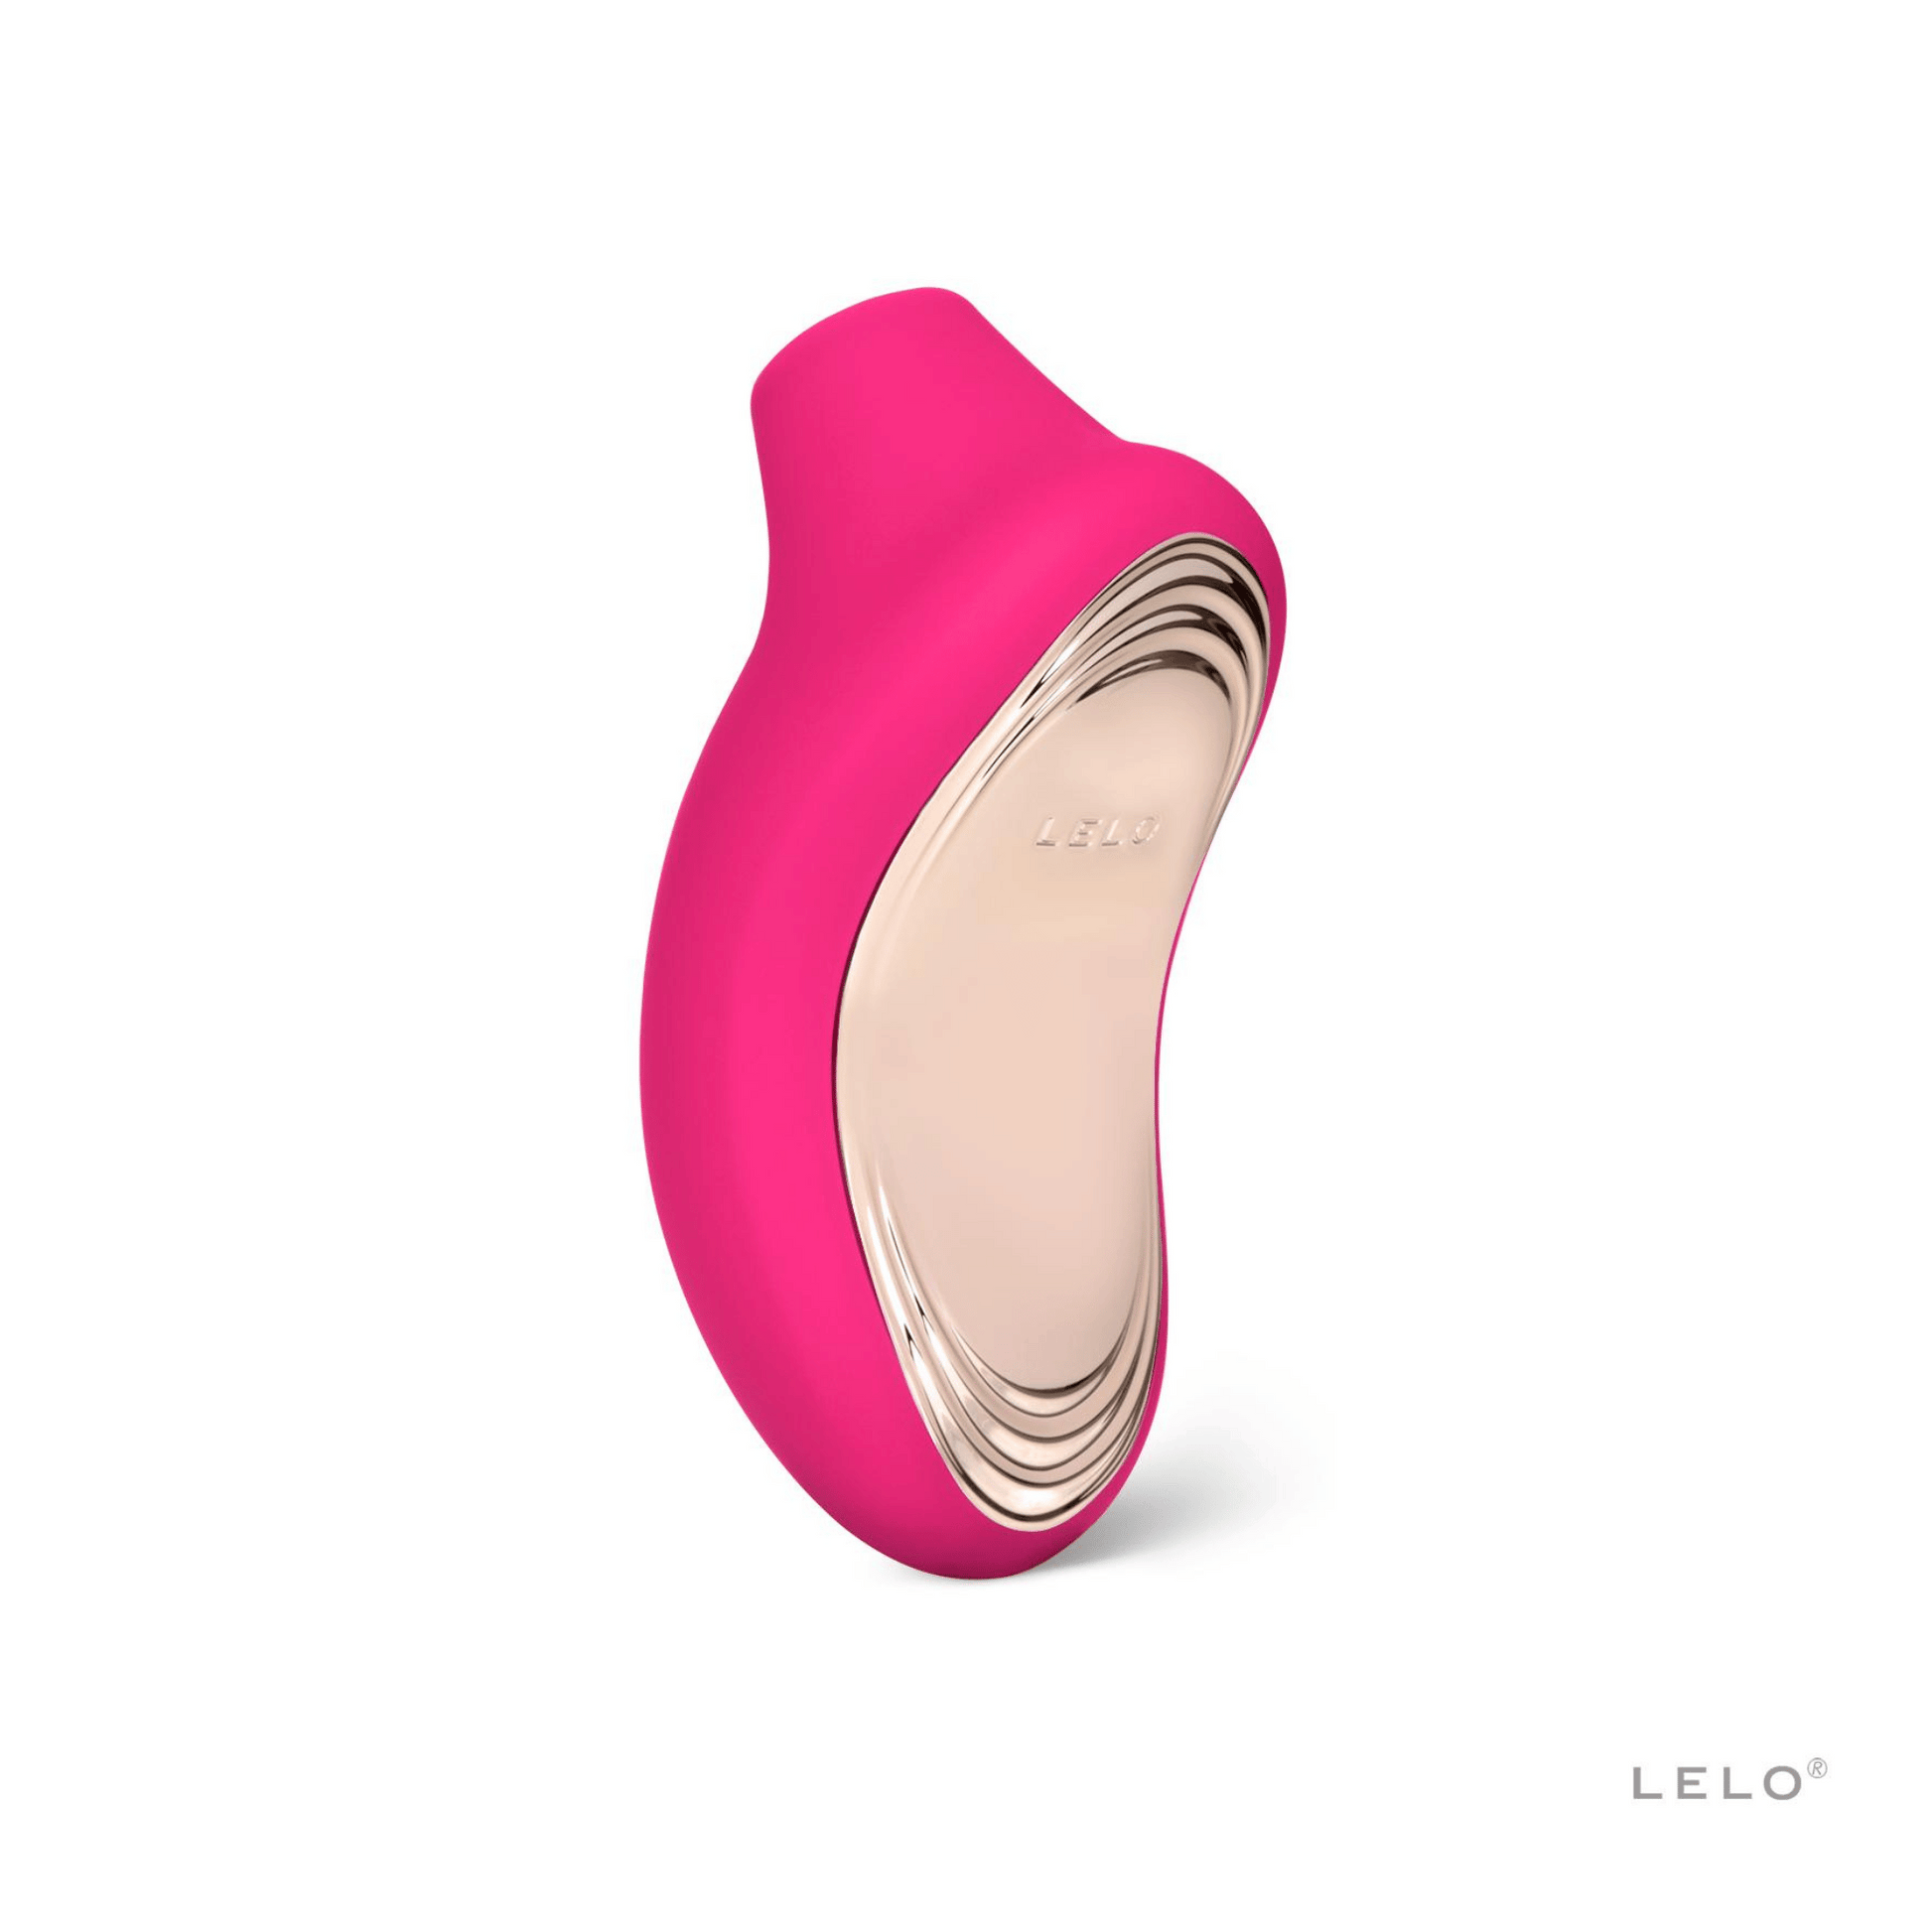 Sona 2 de Lelo en rose, reflétant l'engagement de Lelo envers la qualité et la satisfaction, présenté par OhMyGodz.fr.